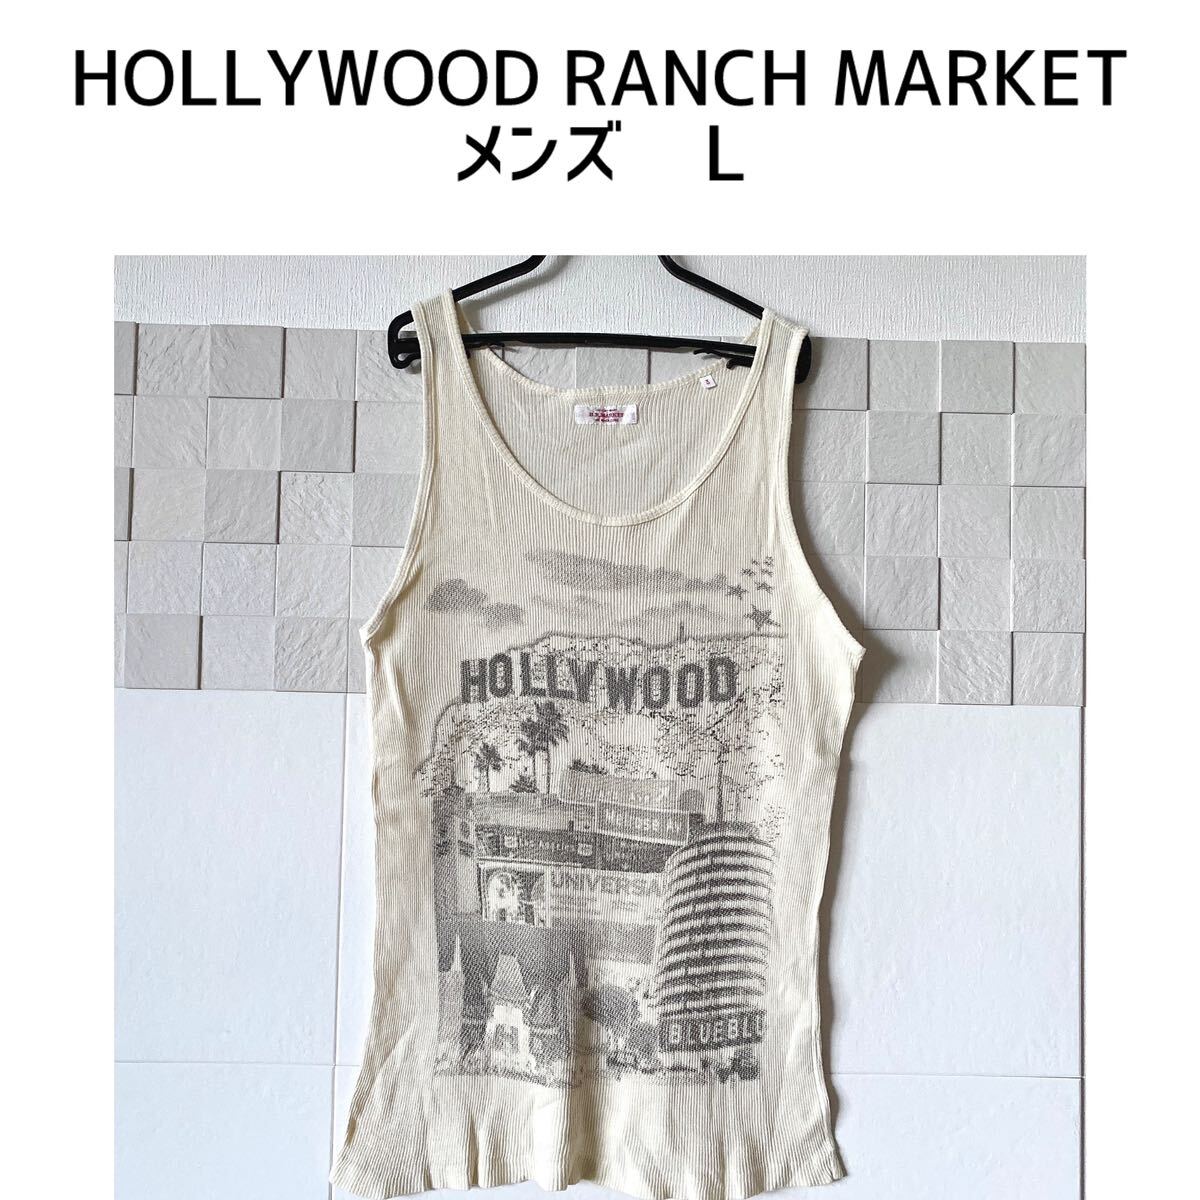 HOLLYWOOD RANCH MARKET メンズ L タンクトップ 夏 クリーム カットソー ハリランの画像1